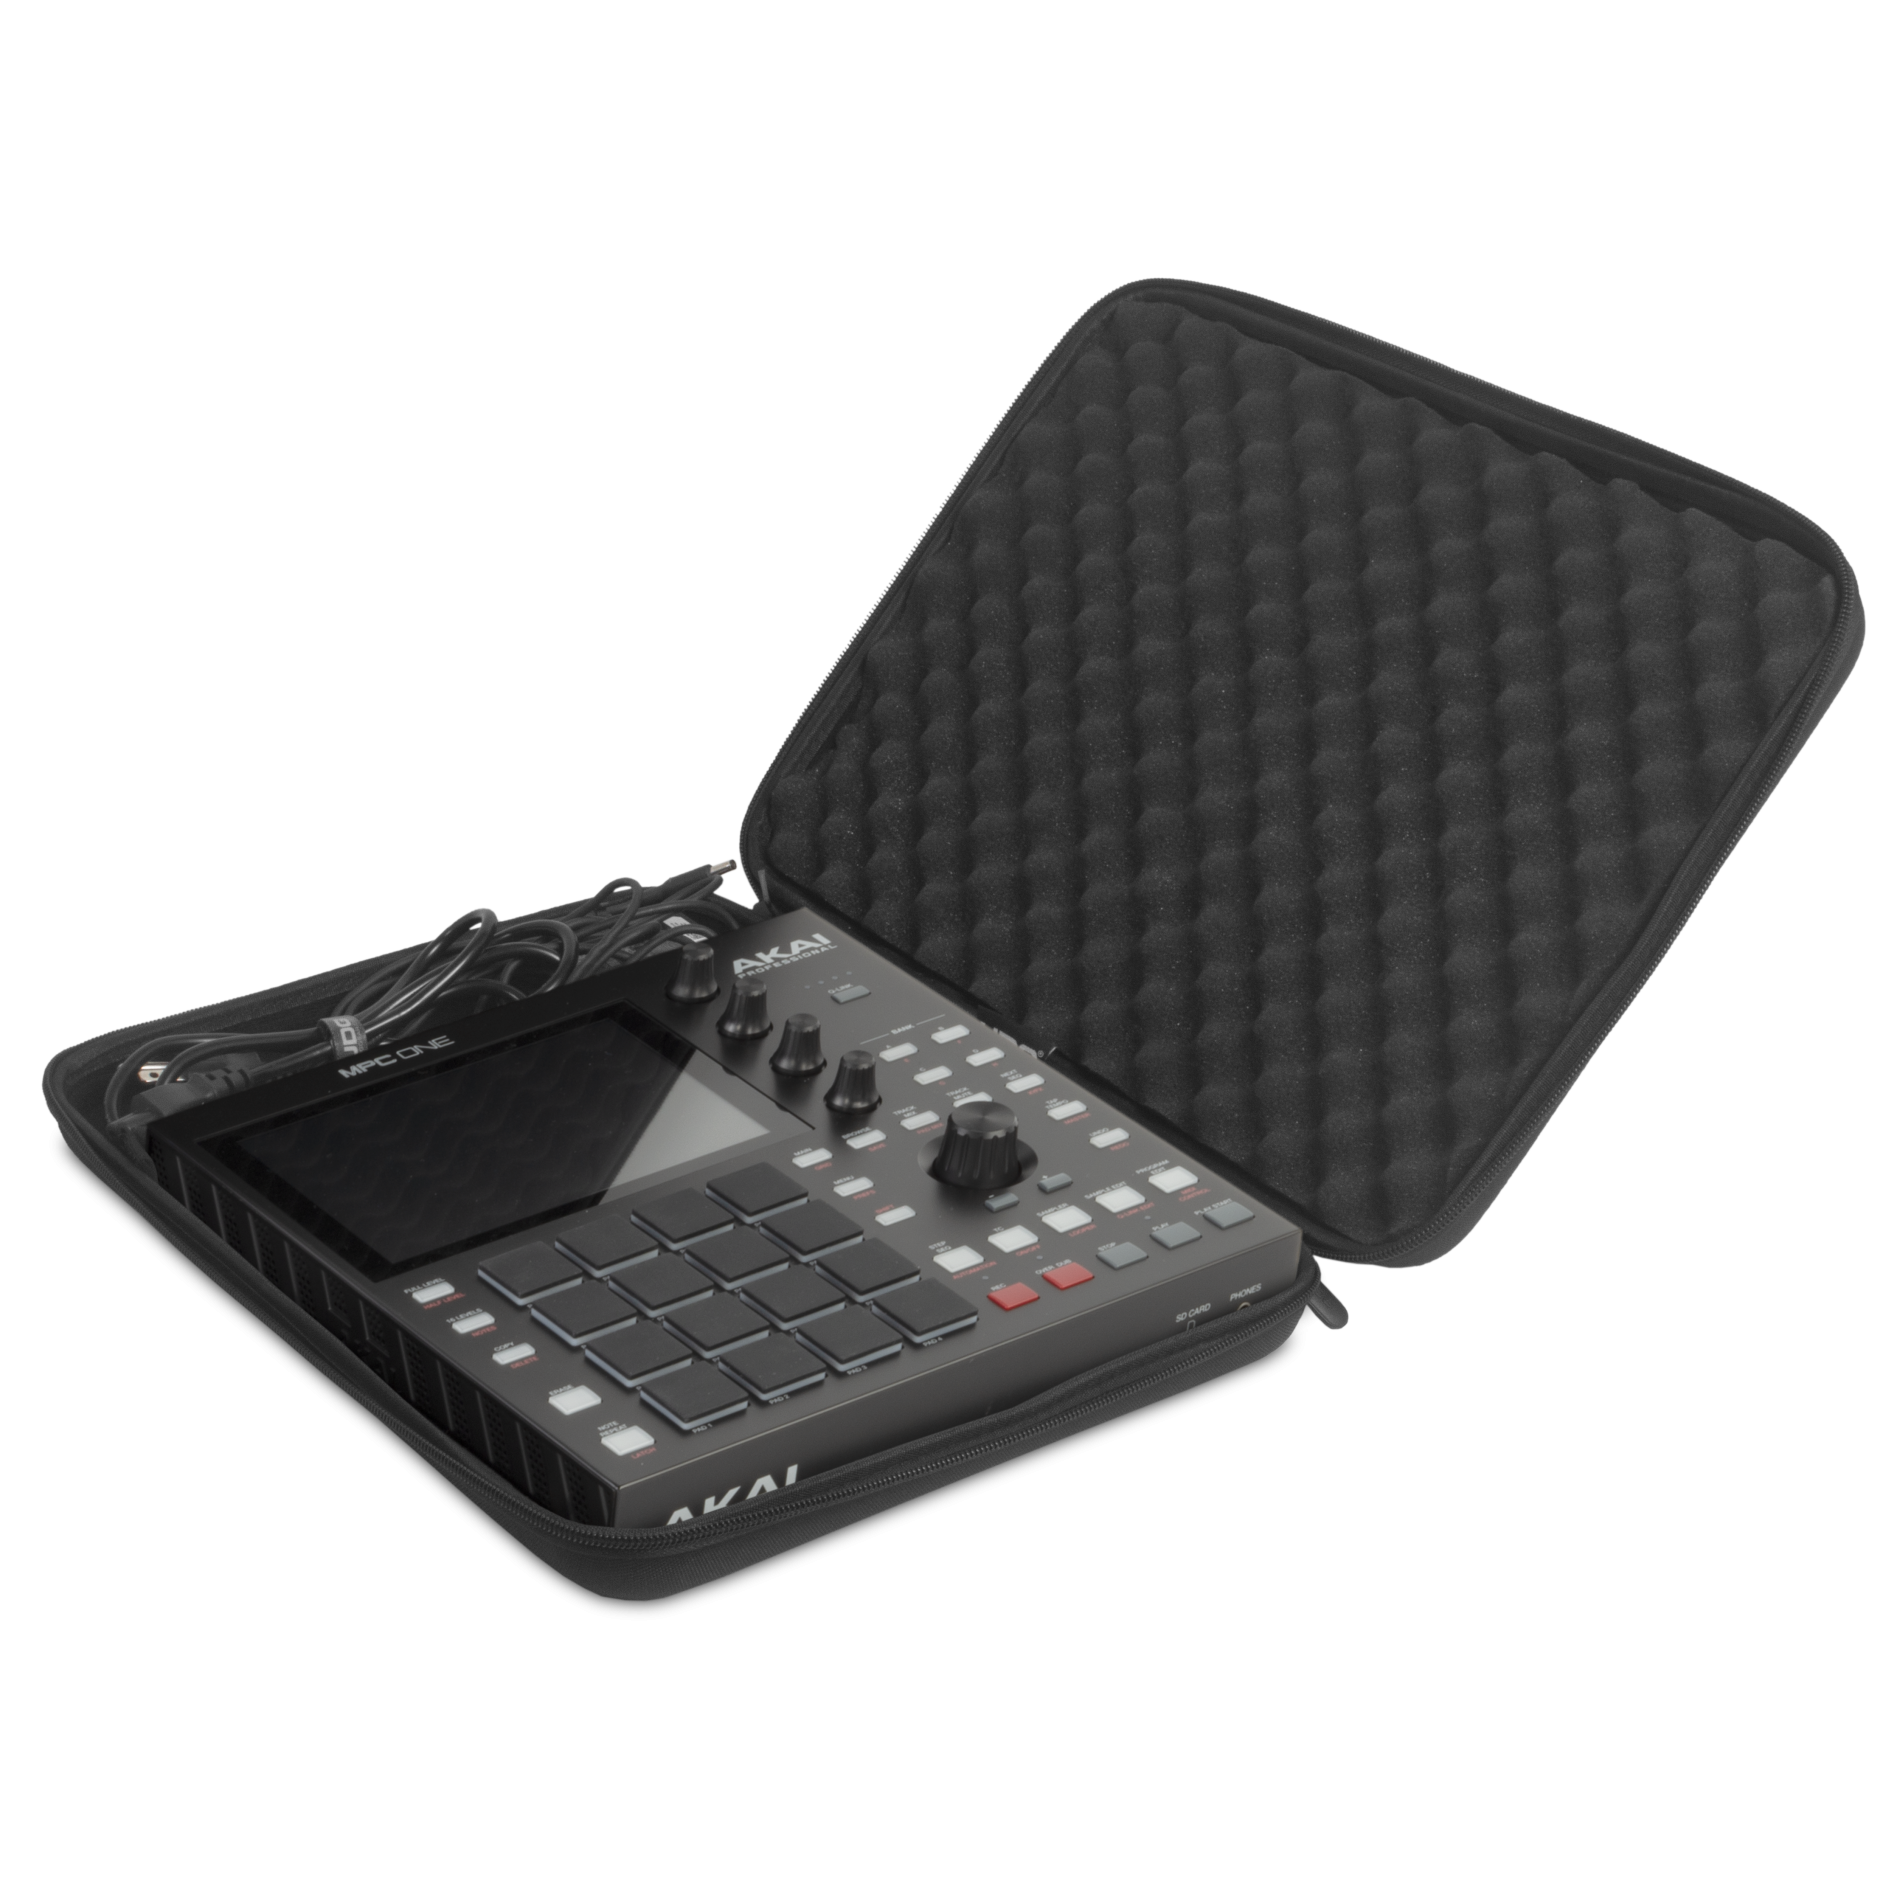 Udg U 8485 Bl( Akai Pc One) - Tasche für Studio-Equipment - Variation 1